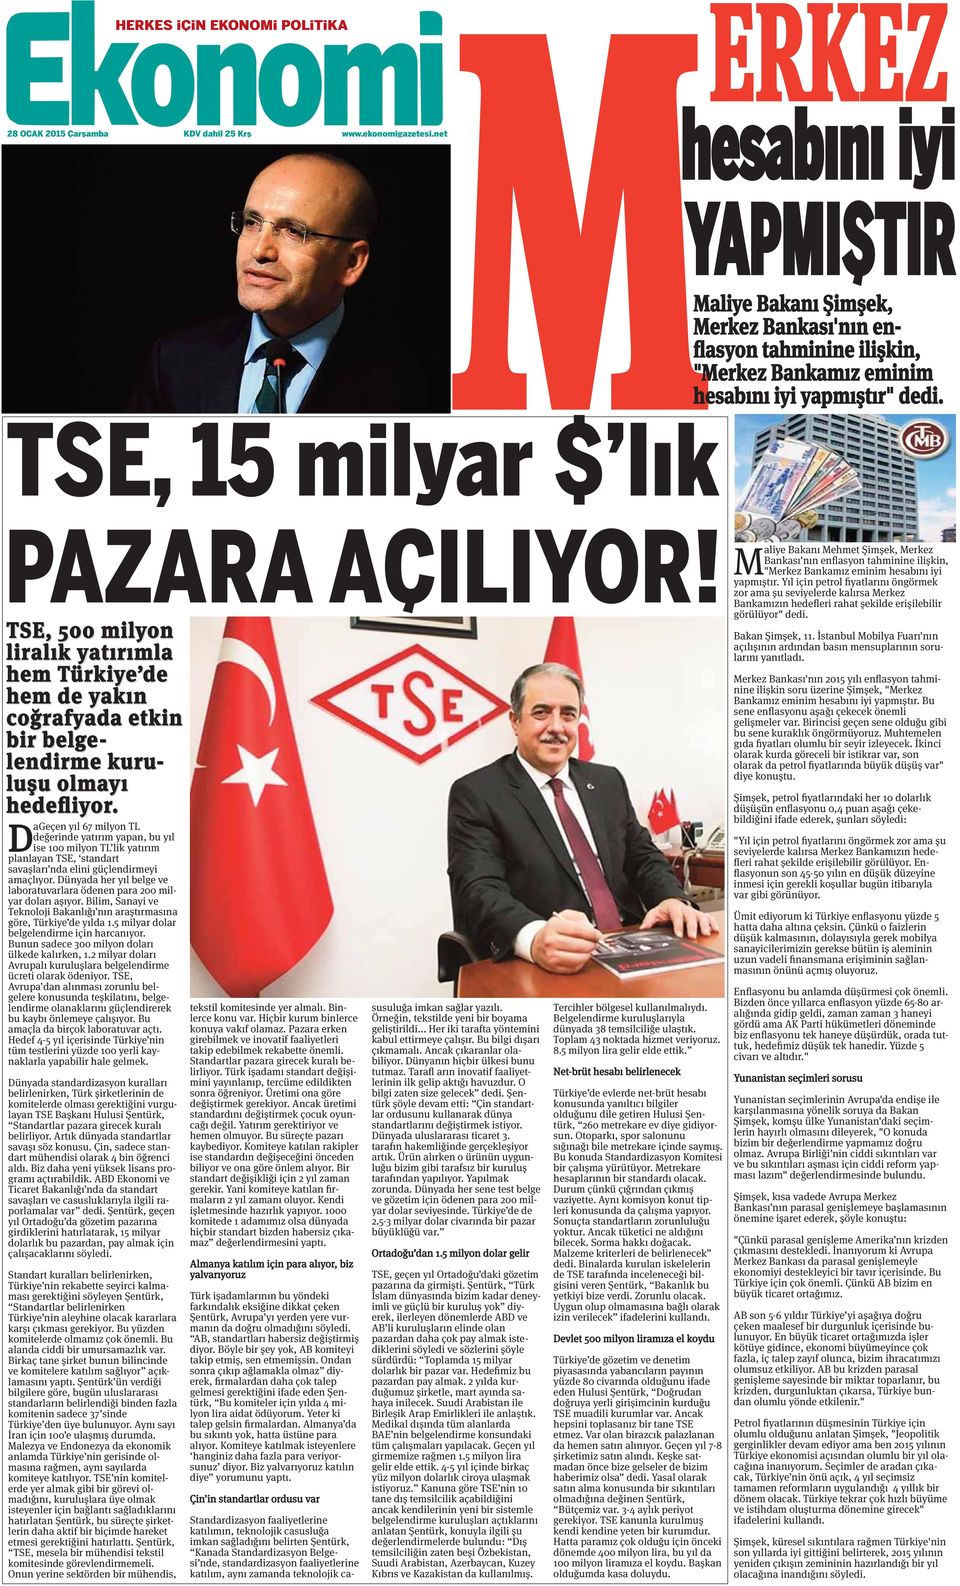 TSE, 500 milyon liralık yatırımla hem Türkiye de hem de yakın coğrafyada etkin bir belge- lendirme kuru- luşu olmayı hedefliyor.